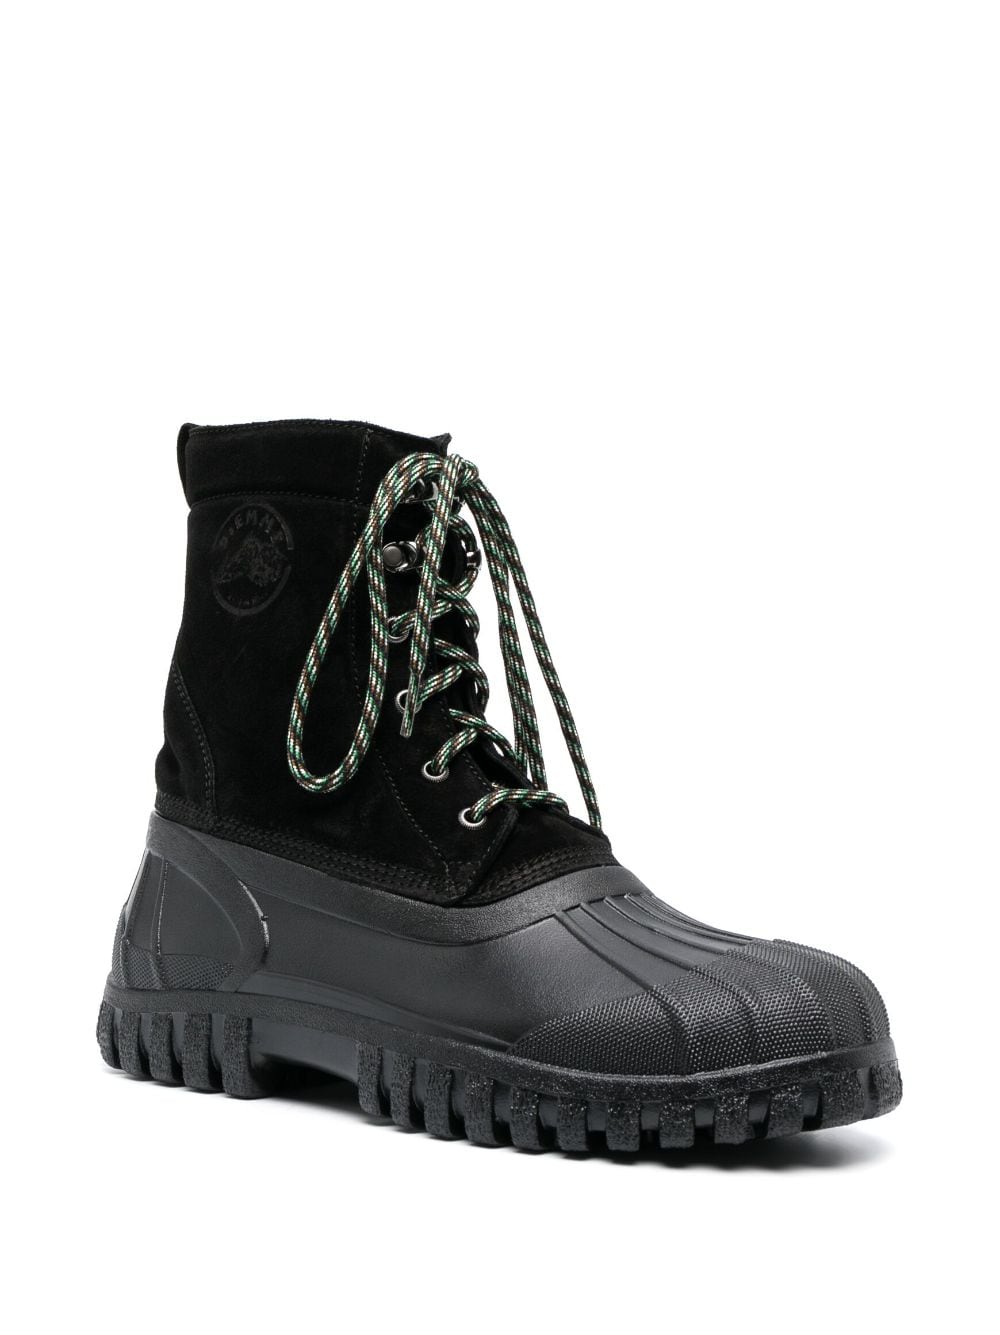 Diemme DIEMME- Anatra Leather Lace-up Boots